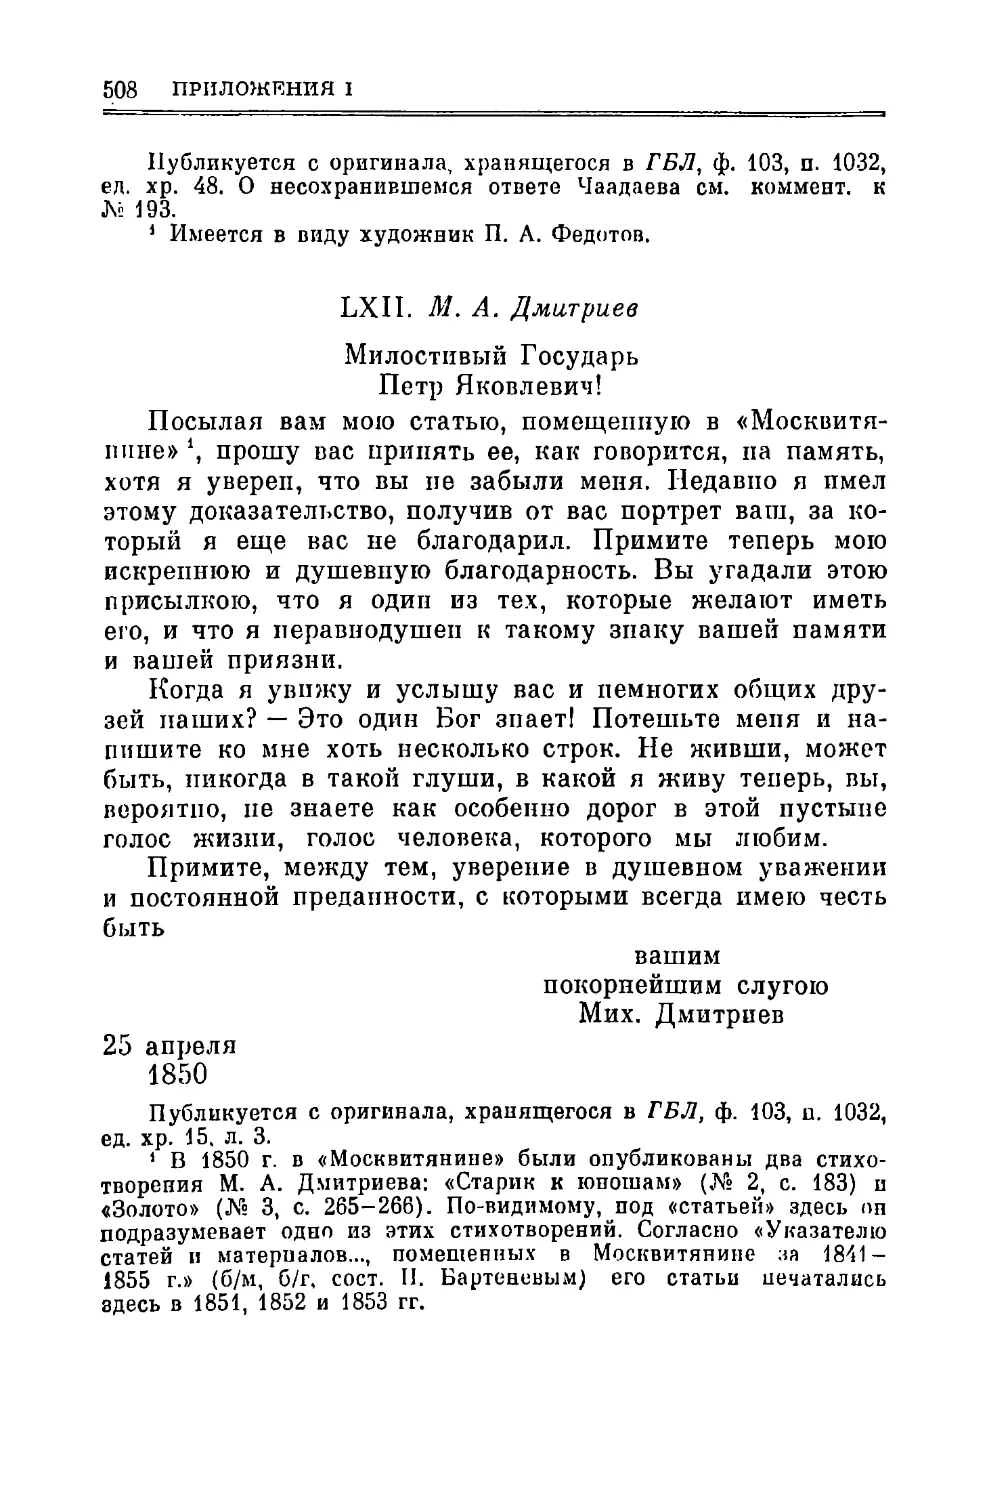 LXII. Дмитриев М.А. 25.ІV.1850